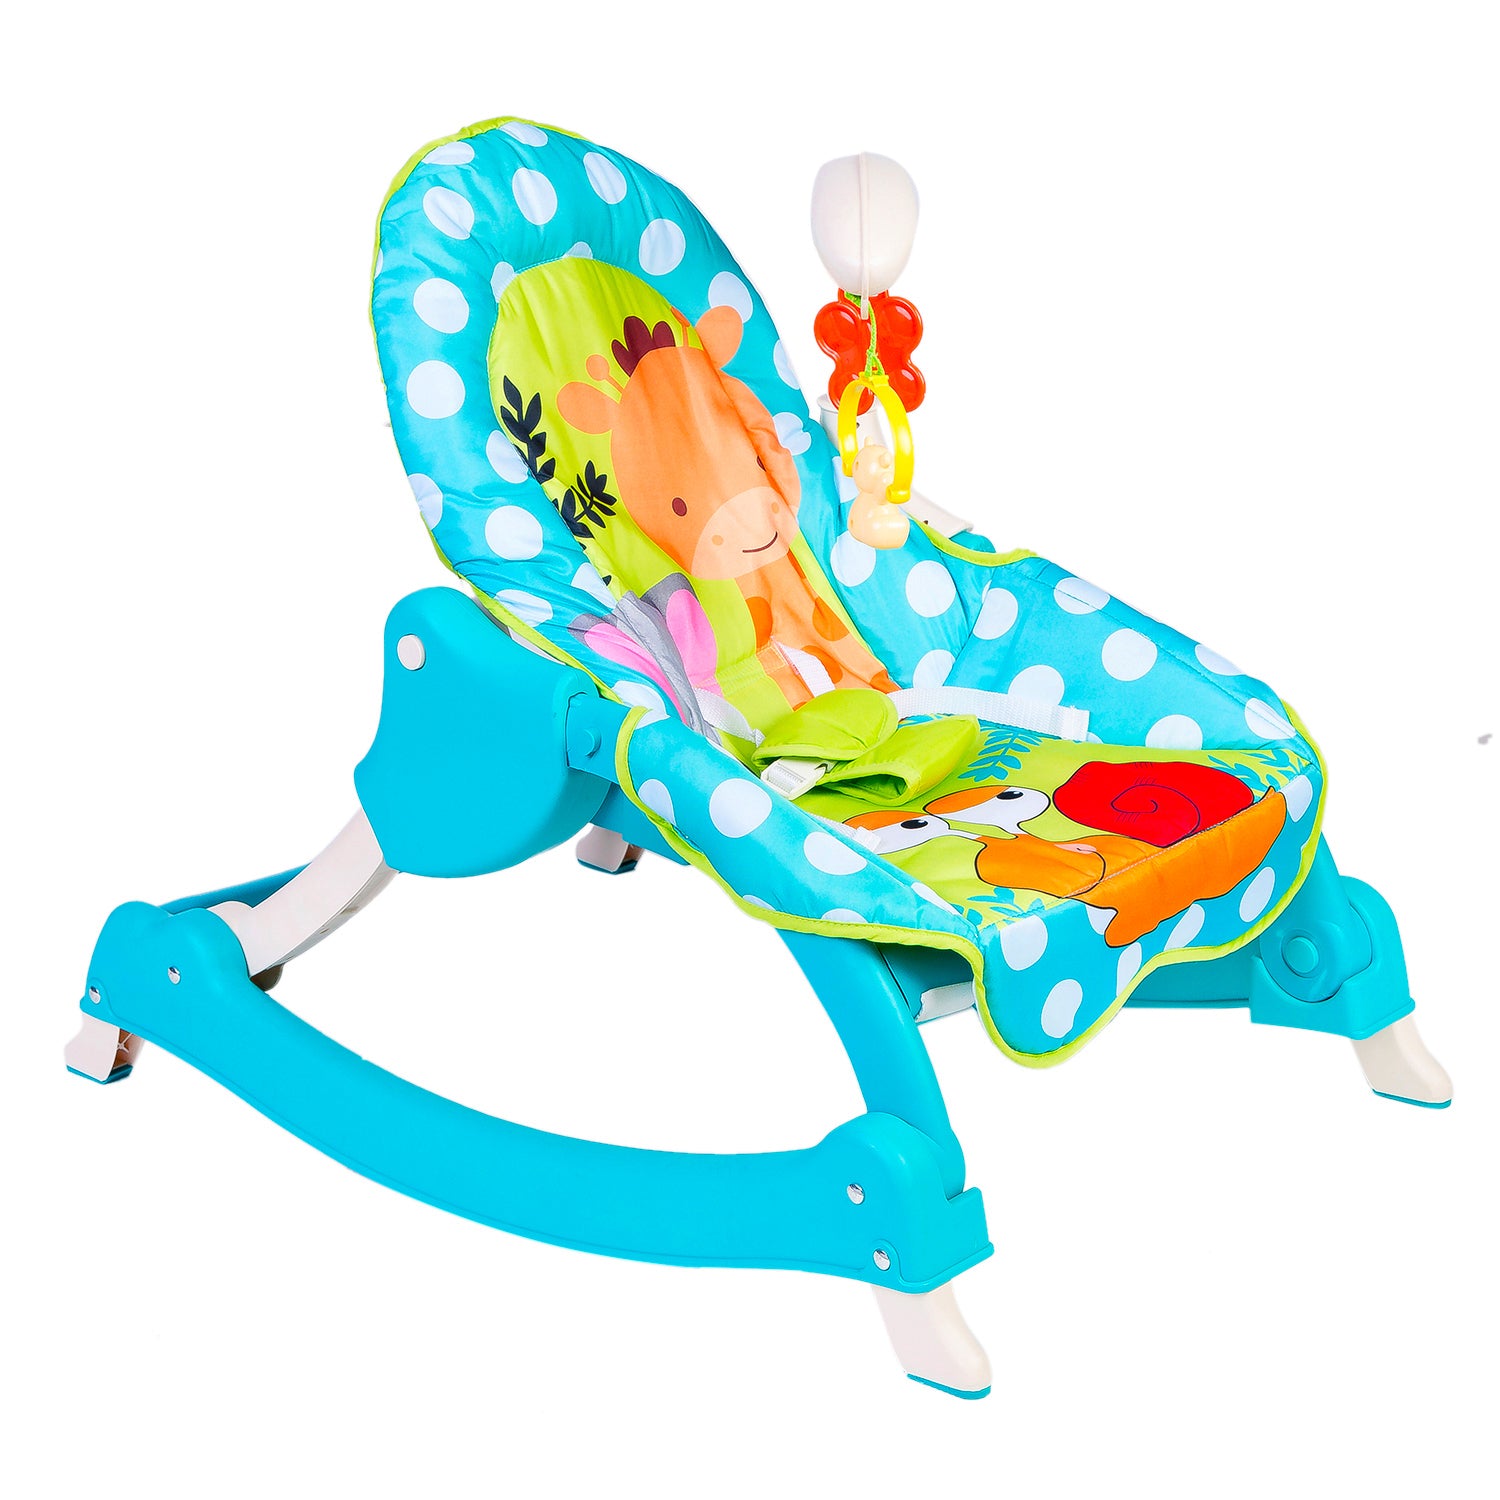 3 Adjustable Level Backrest Musical Baby Rocking Chair Blue Polka Dot